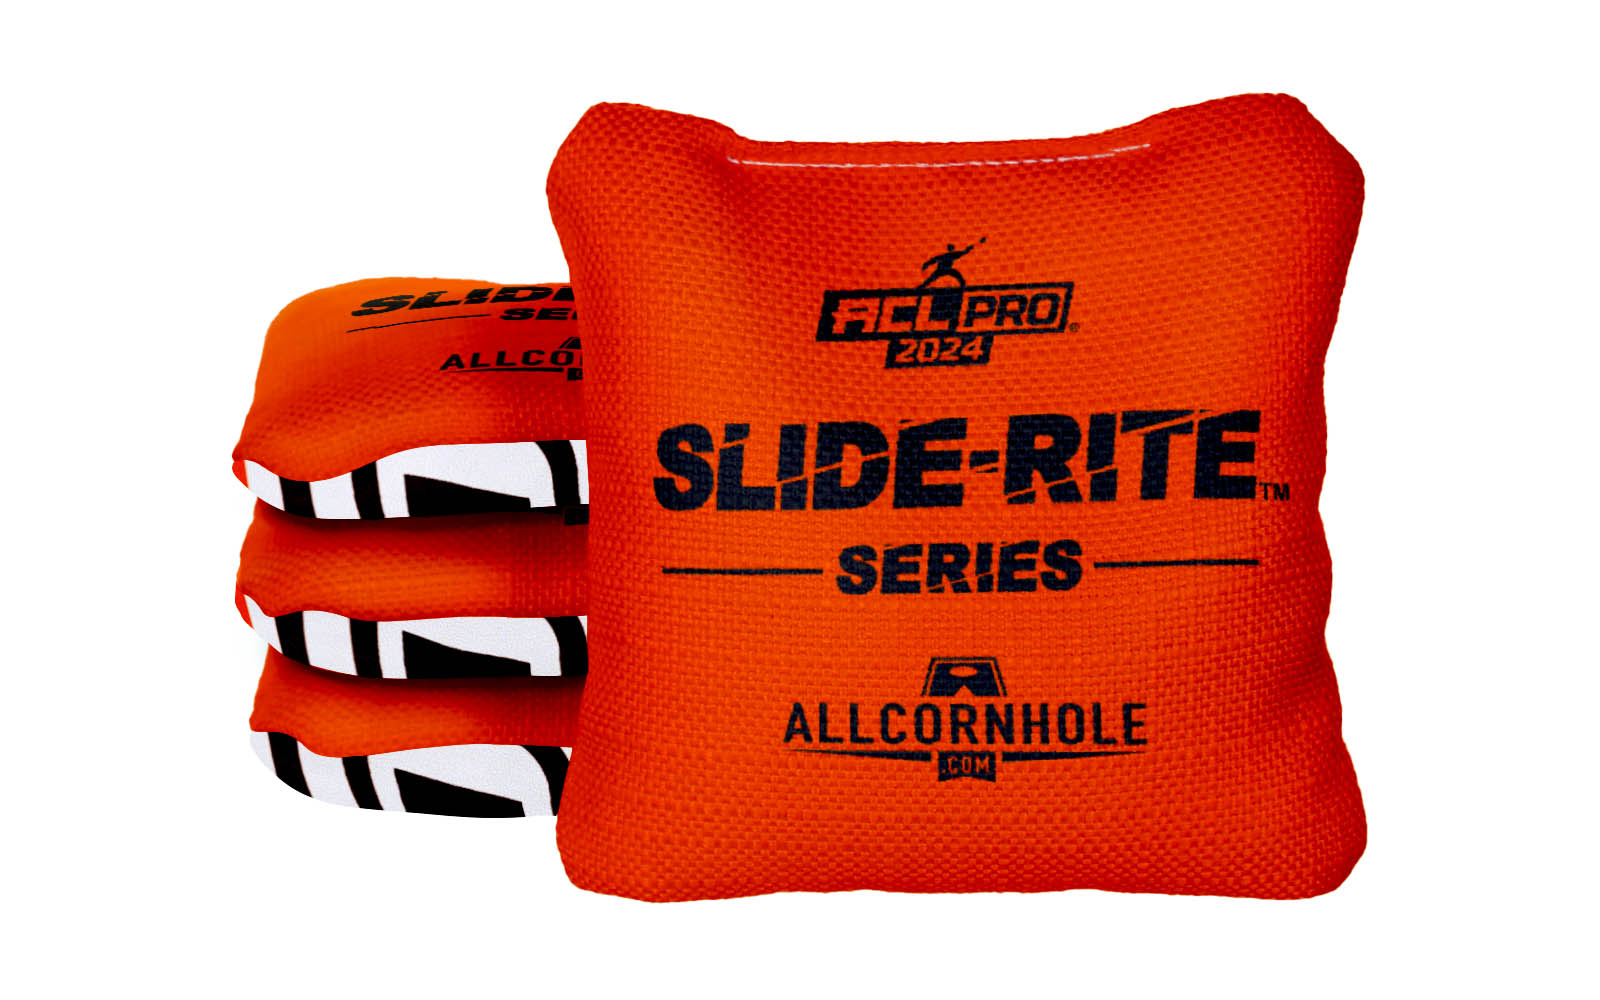 Officially Licensed Collegiate Cornhole Bags - AllCornhole Slide Rite - Set of 4 - Oklahoma State University